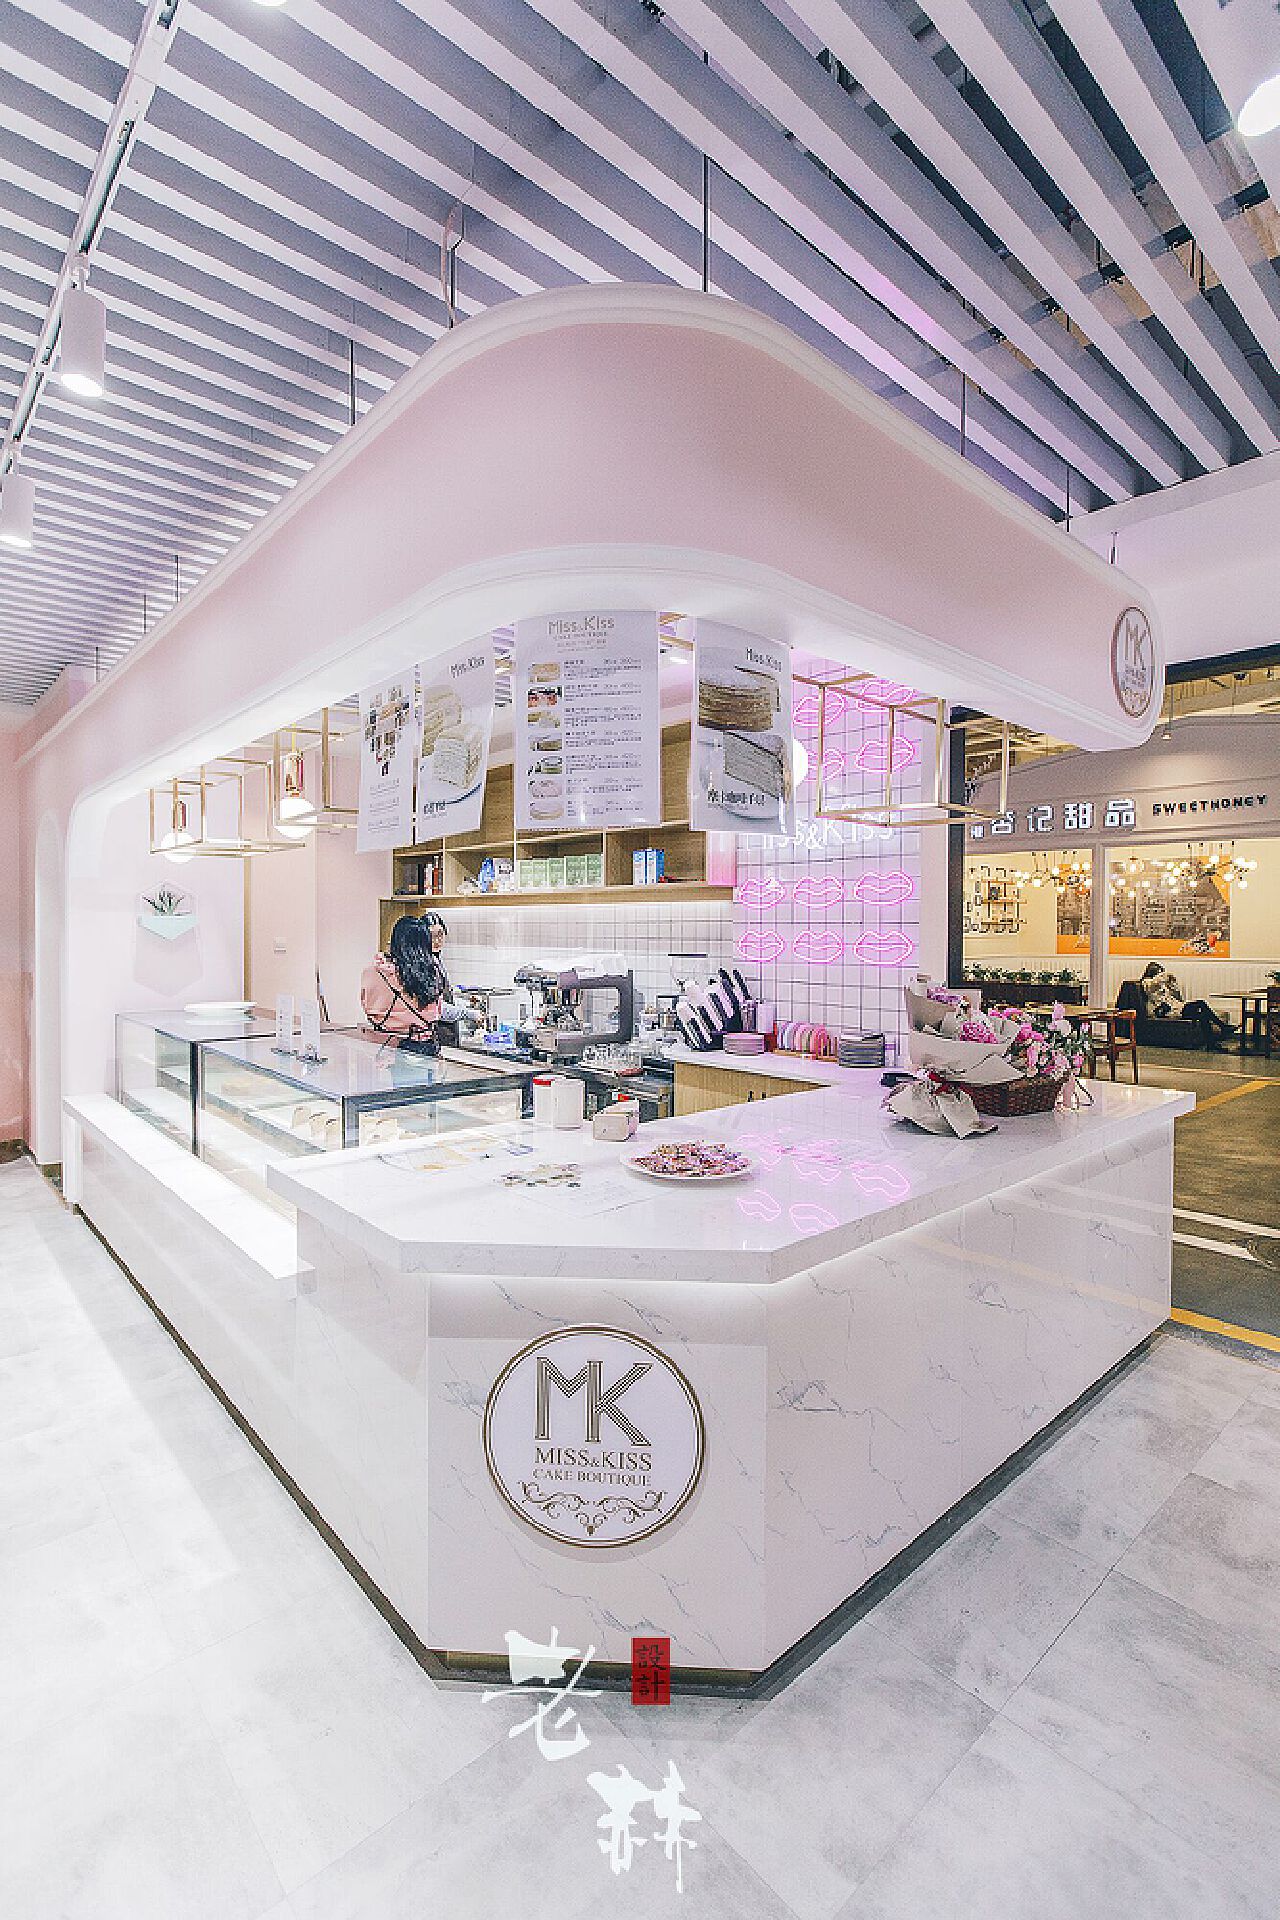 重庆原木风甜品店设计案例分享|蛋糕店装修案例 - 哔哩哔哩